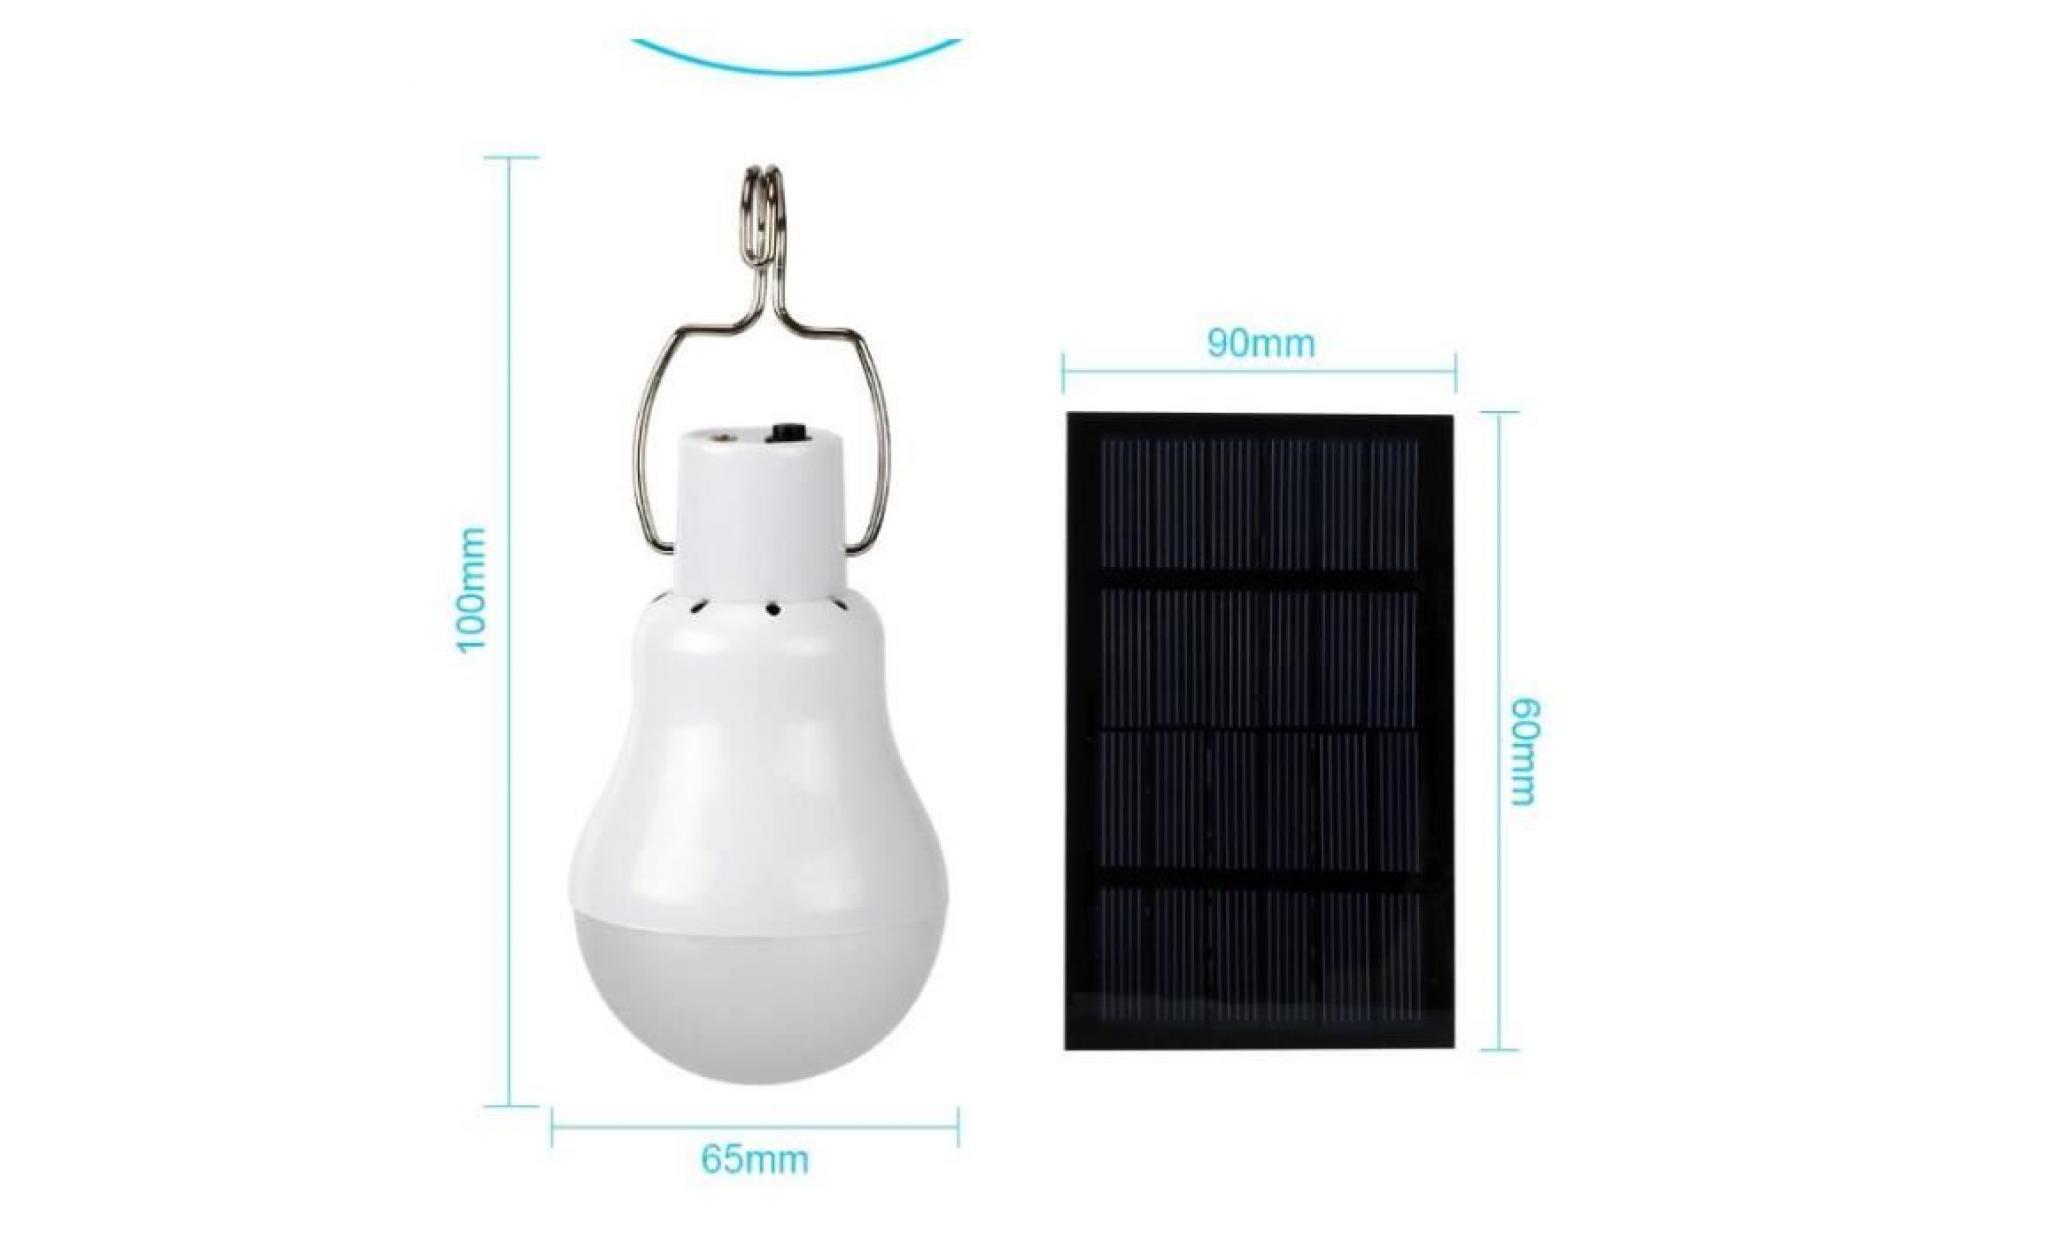 generic led à énergie solaire lumière spot ampoule led portable lampe solaire avec panneau solaire pour éclairage extérieur ran pas cher